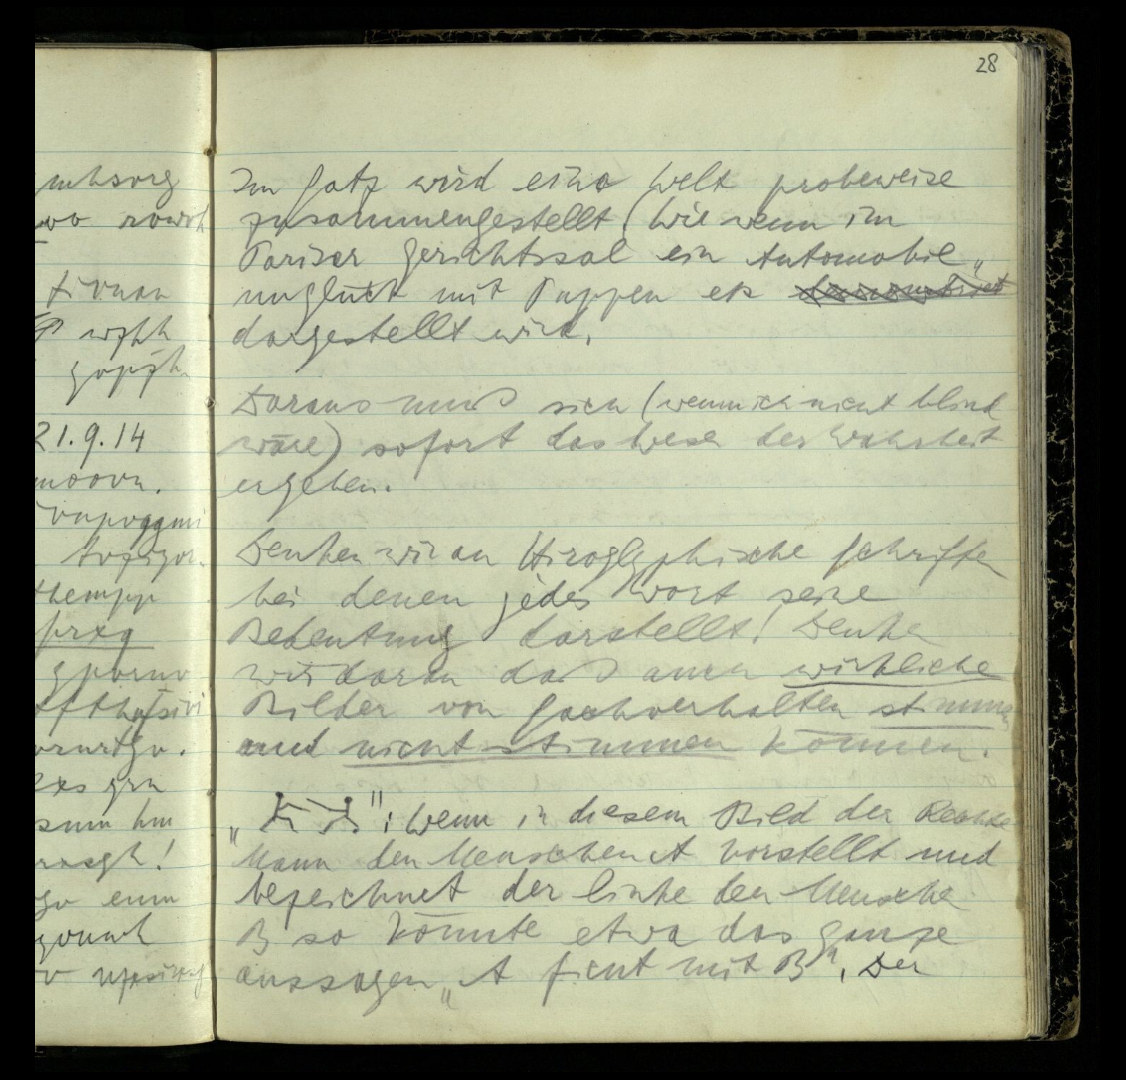 Wittgenstein's handwritten notes from 1914 